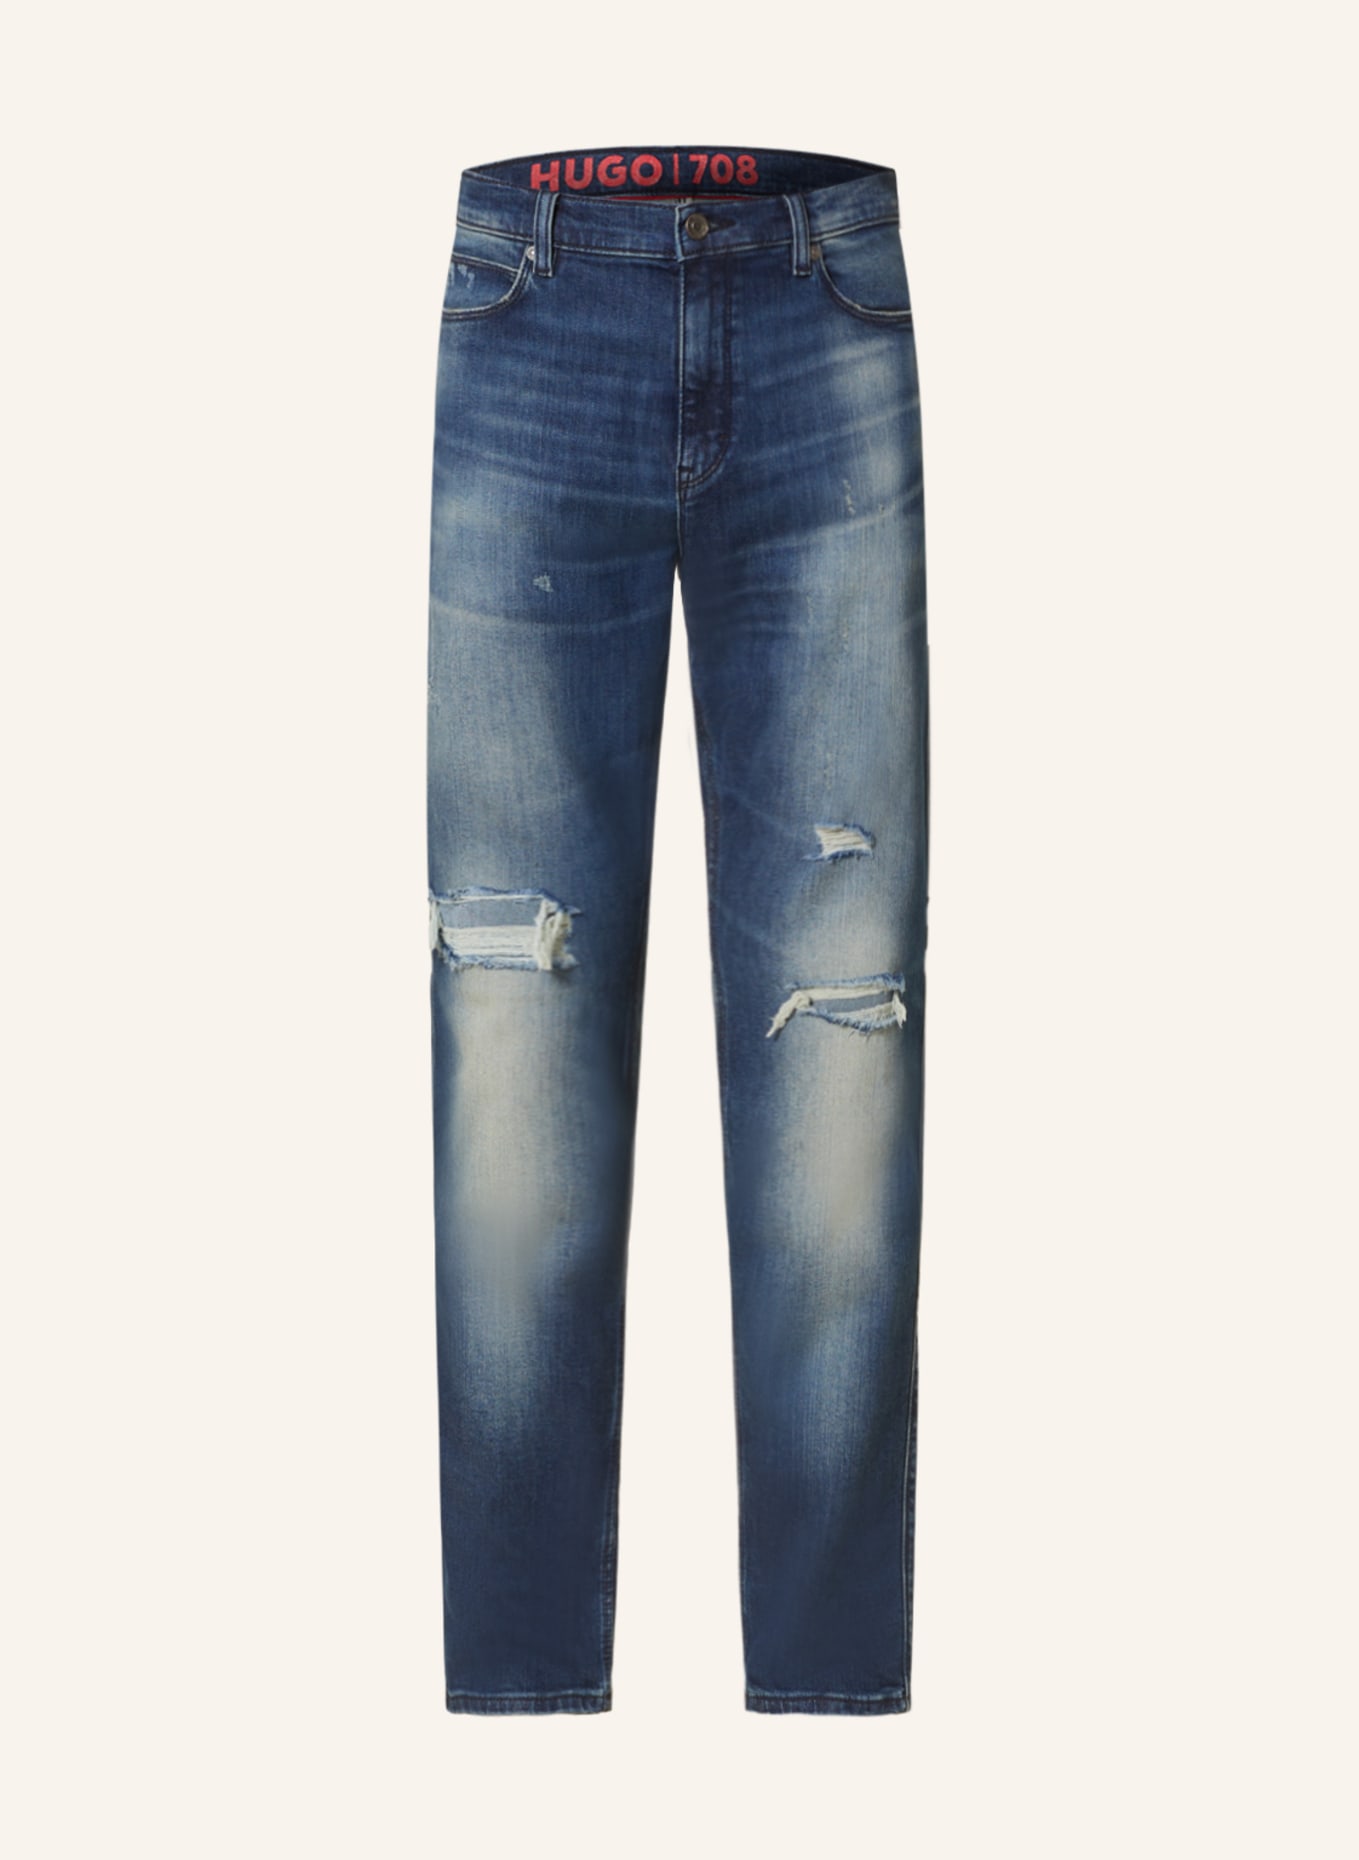 HUGO Destroyed jeans 708 slim fit, Color: 411 NAVY (Image 1)